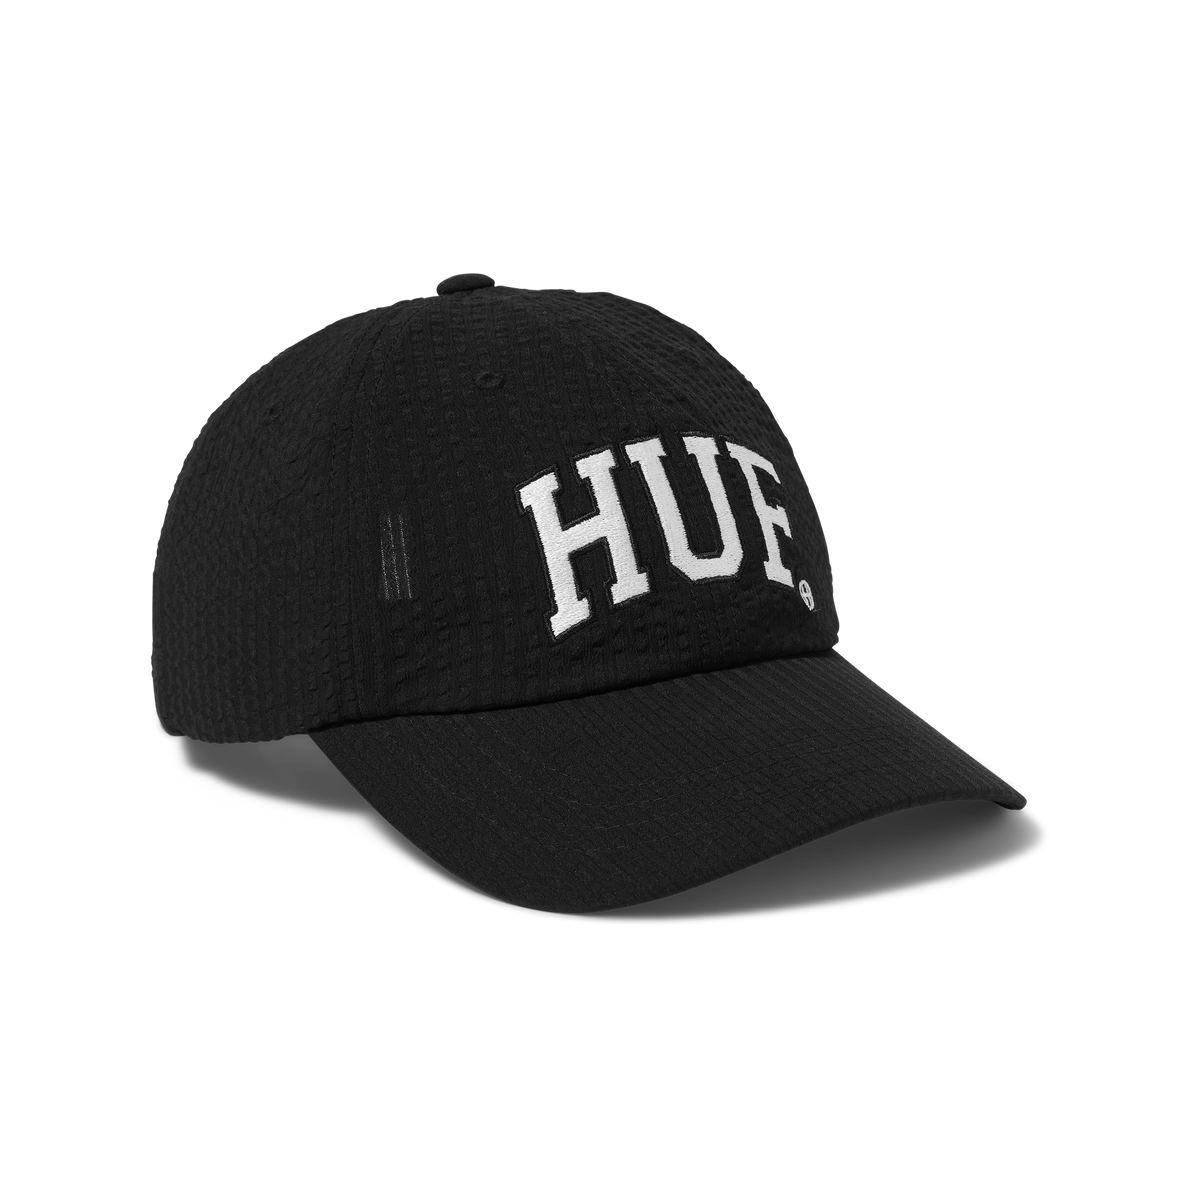 HUF - HUF ARCH LOGO CURVED VISOR 6-PANEL HAT - BLACK